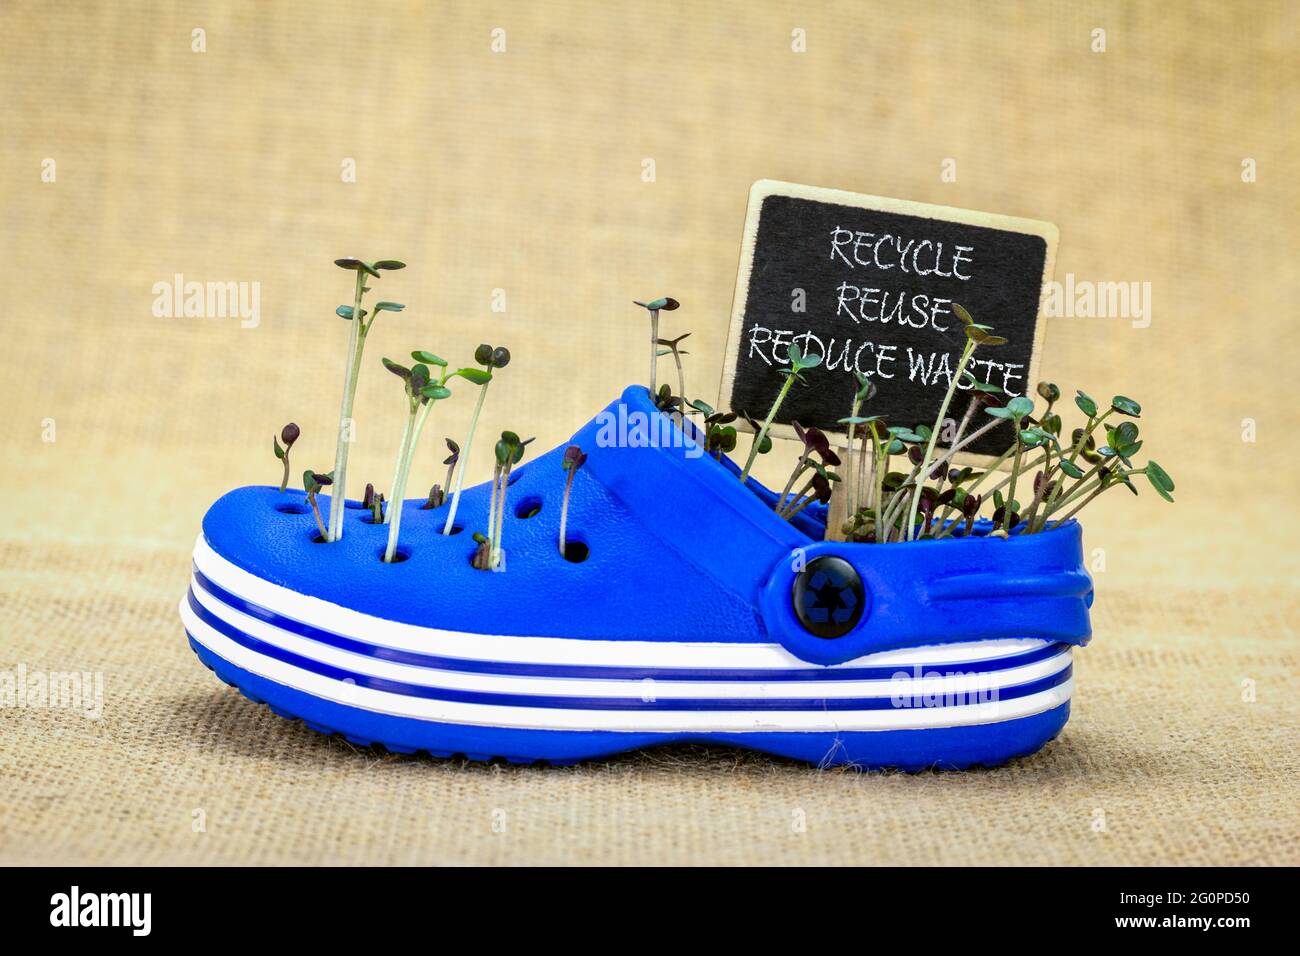 scarpe in plastica riutilizzate per coltivare la semina, riciclare, riutilizzate ridurre i rifiuti cartello lavagna, vita sostenibile Foto Stock